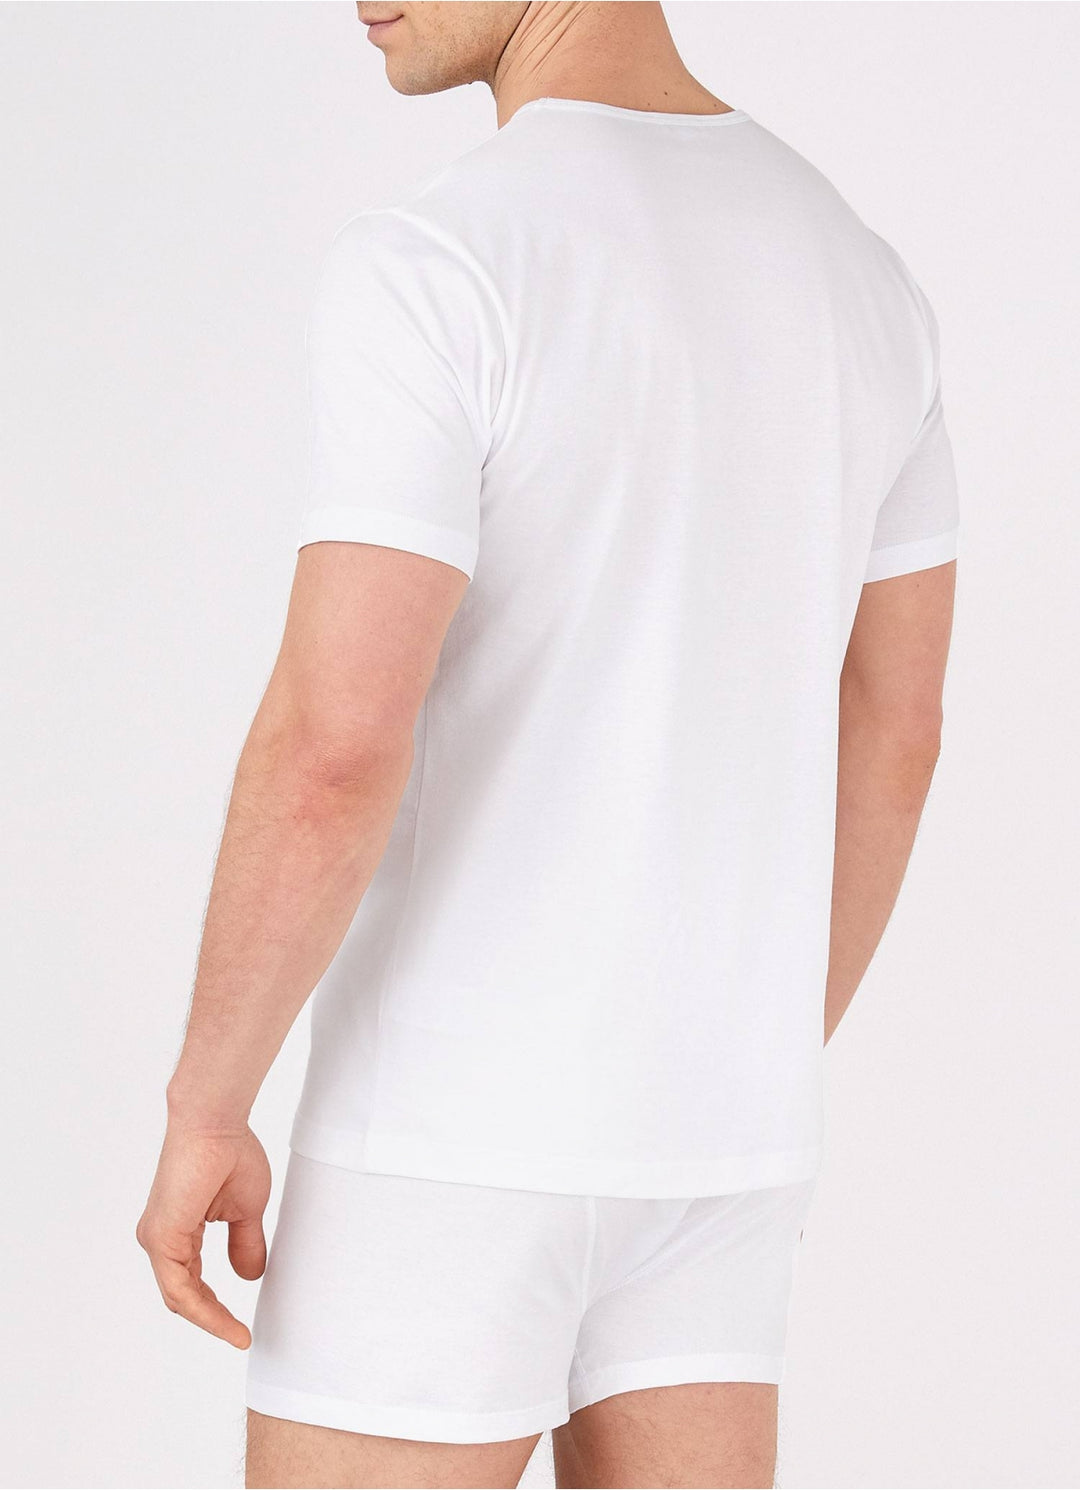 Superfine Underwear T-Shirt - White